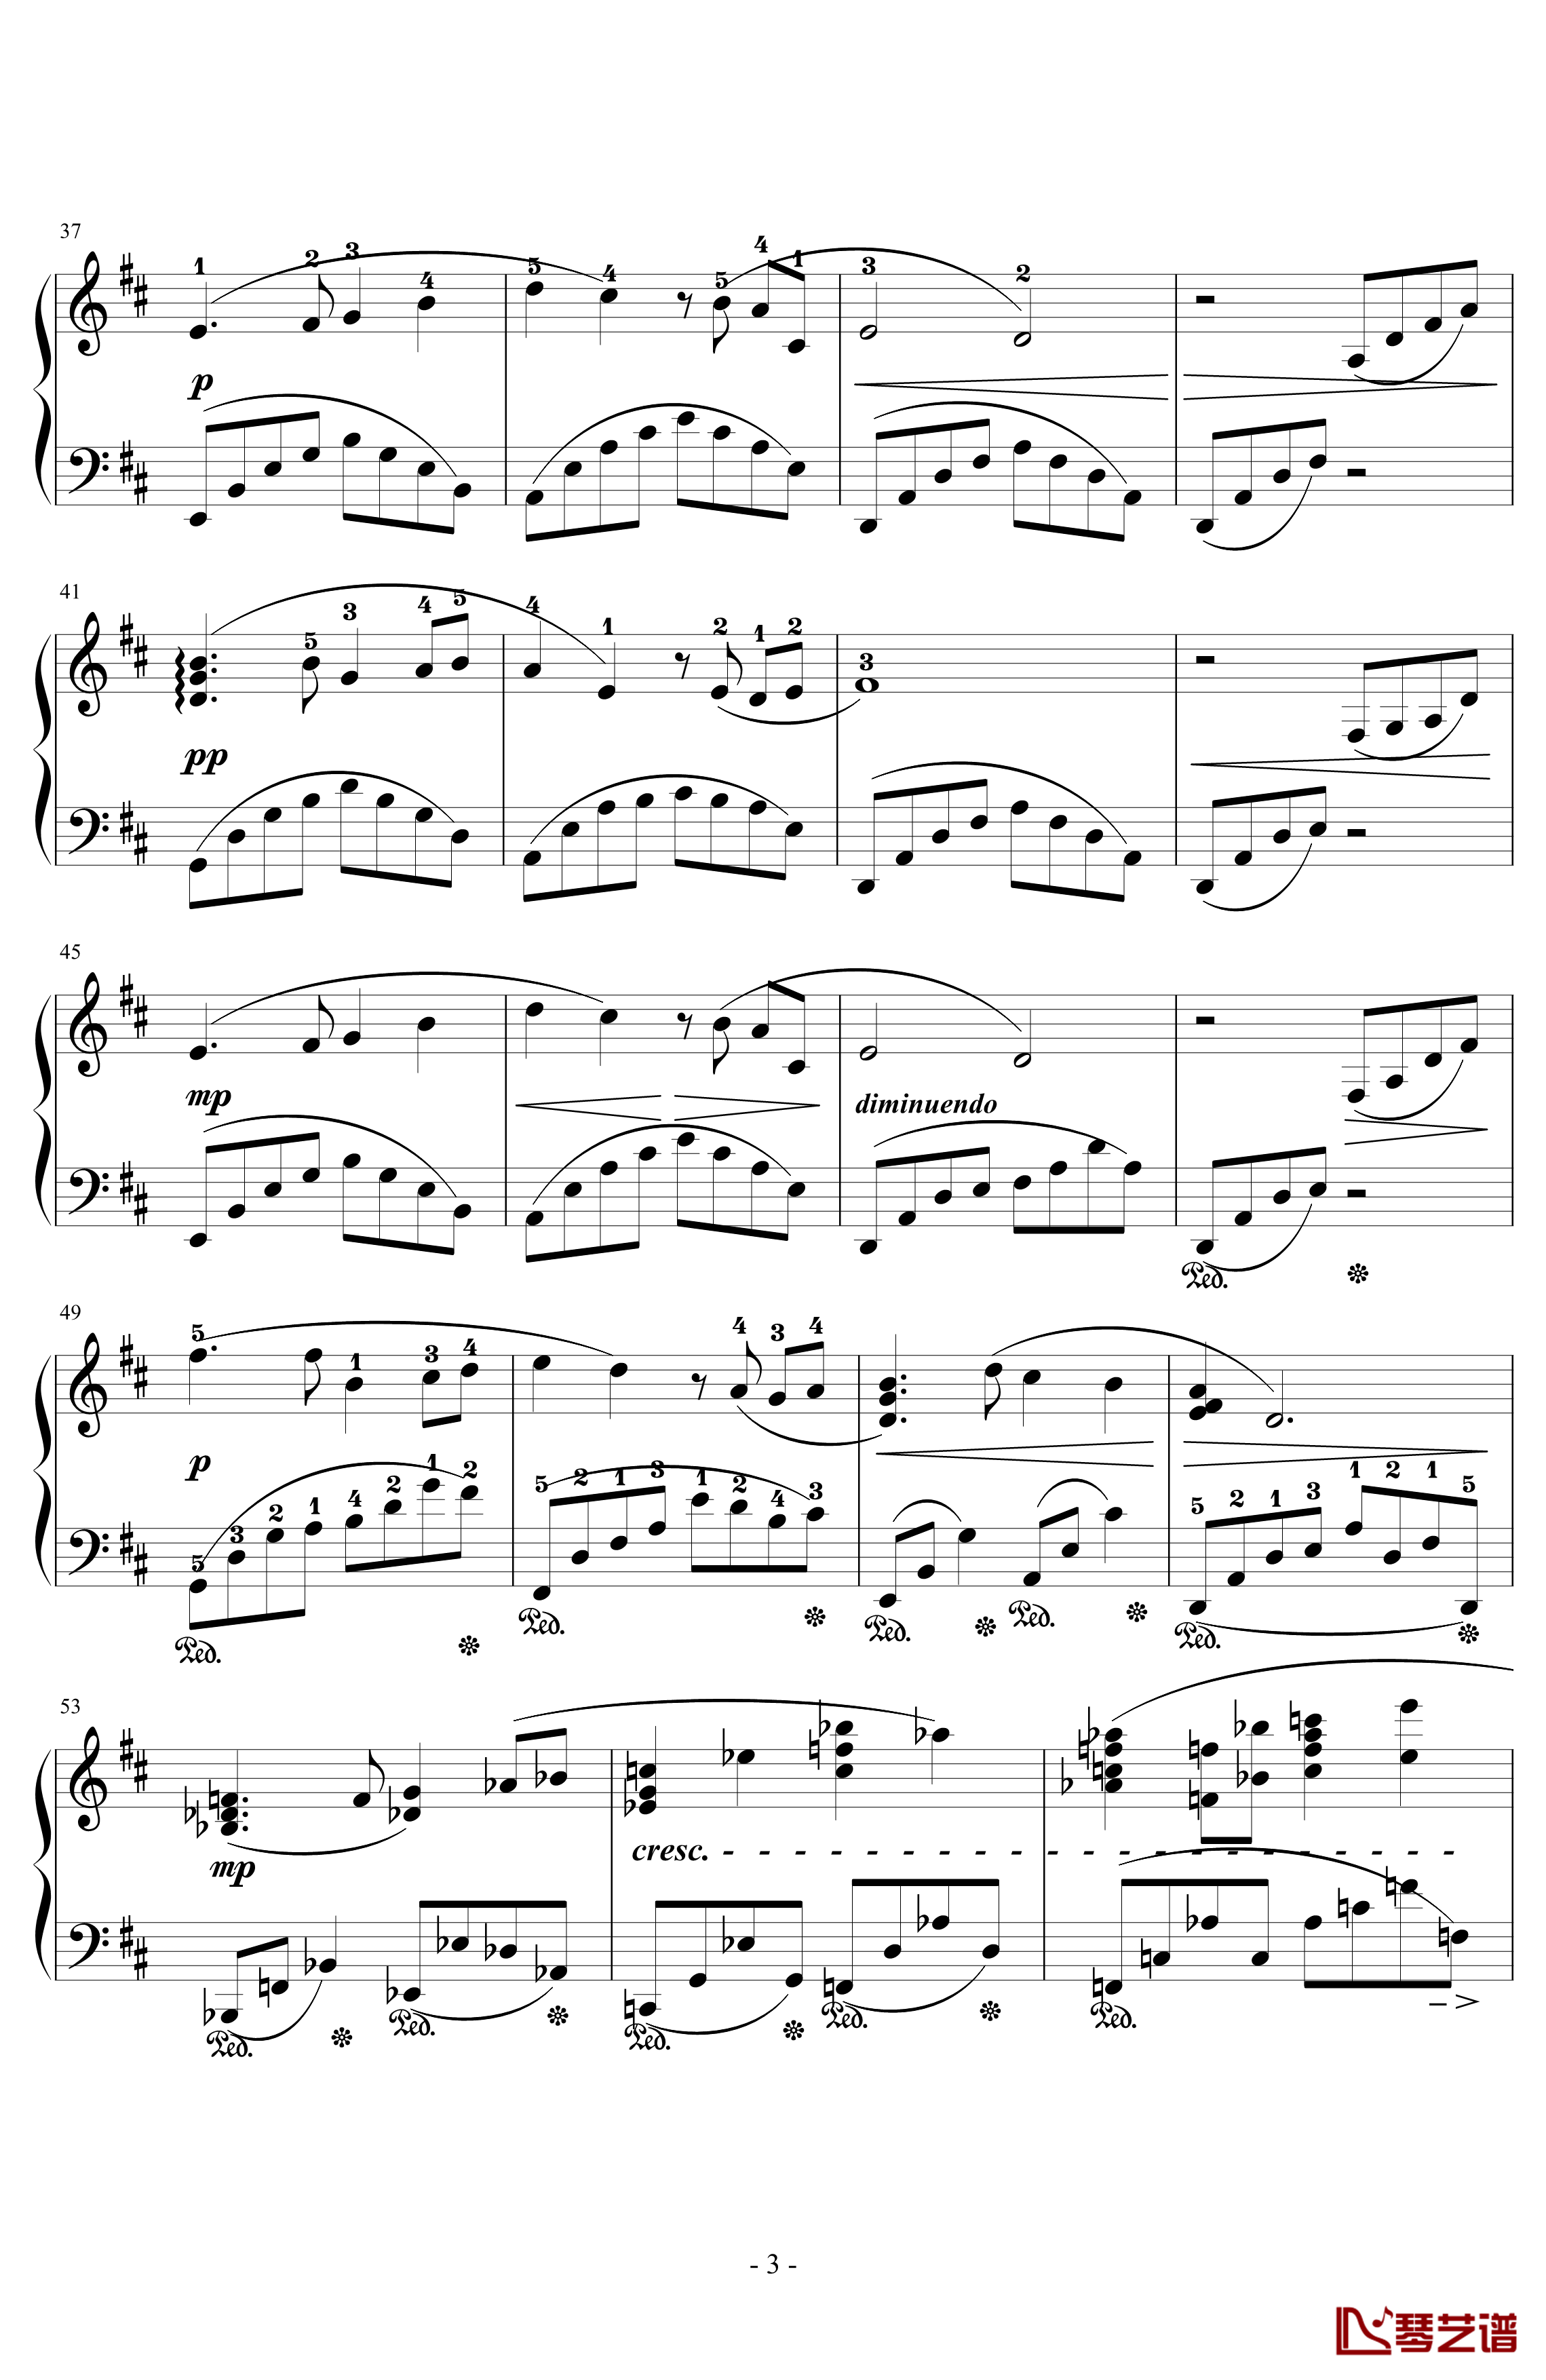 とどかぬ想い钢琴谱-from FF9 Orchestra Version-植松伸夫3